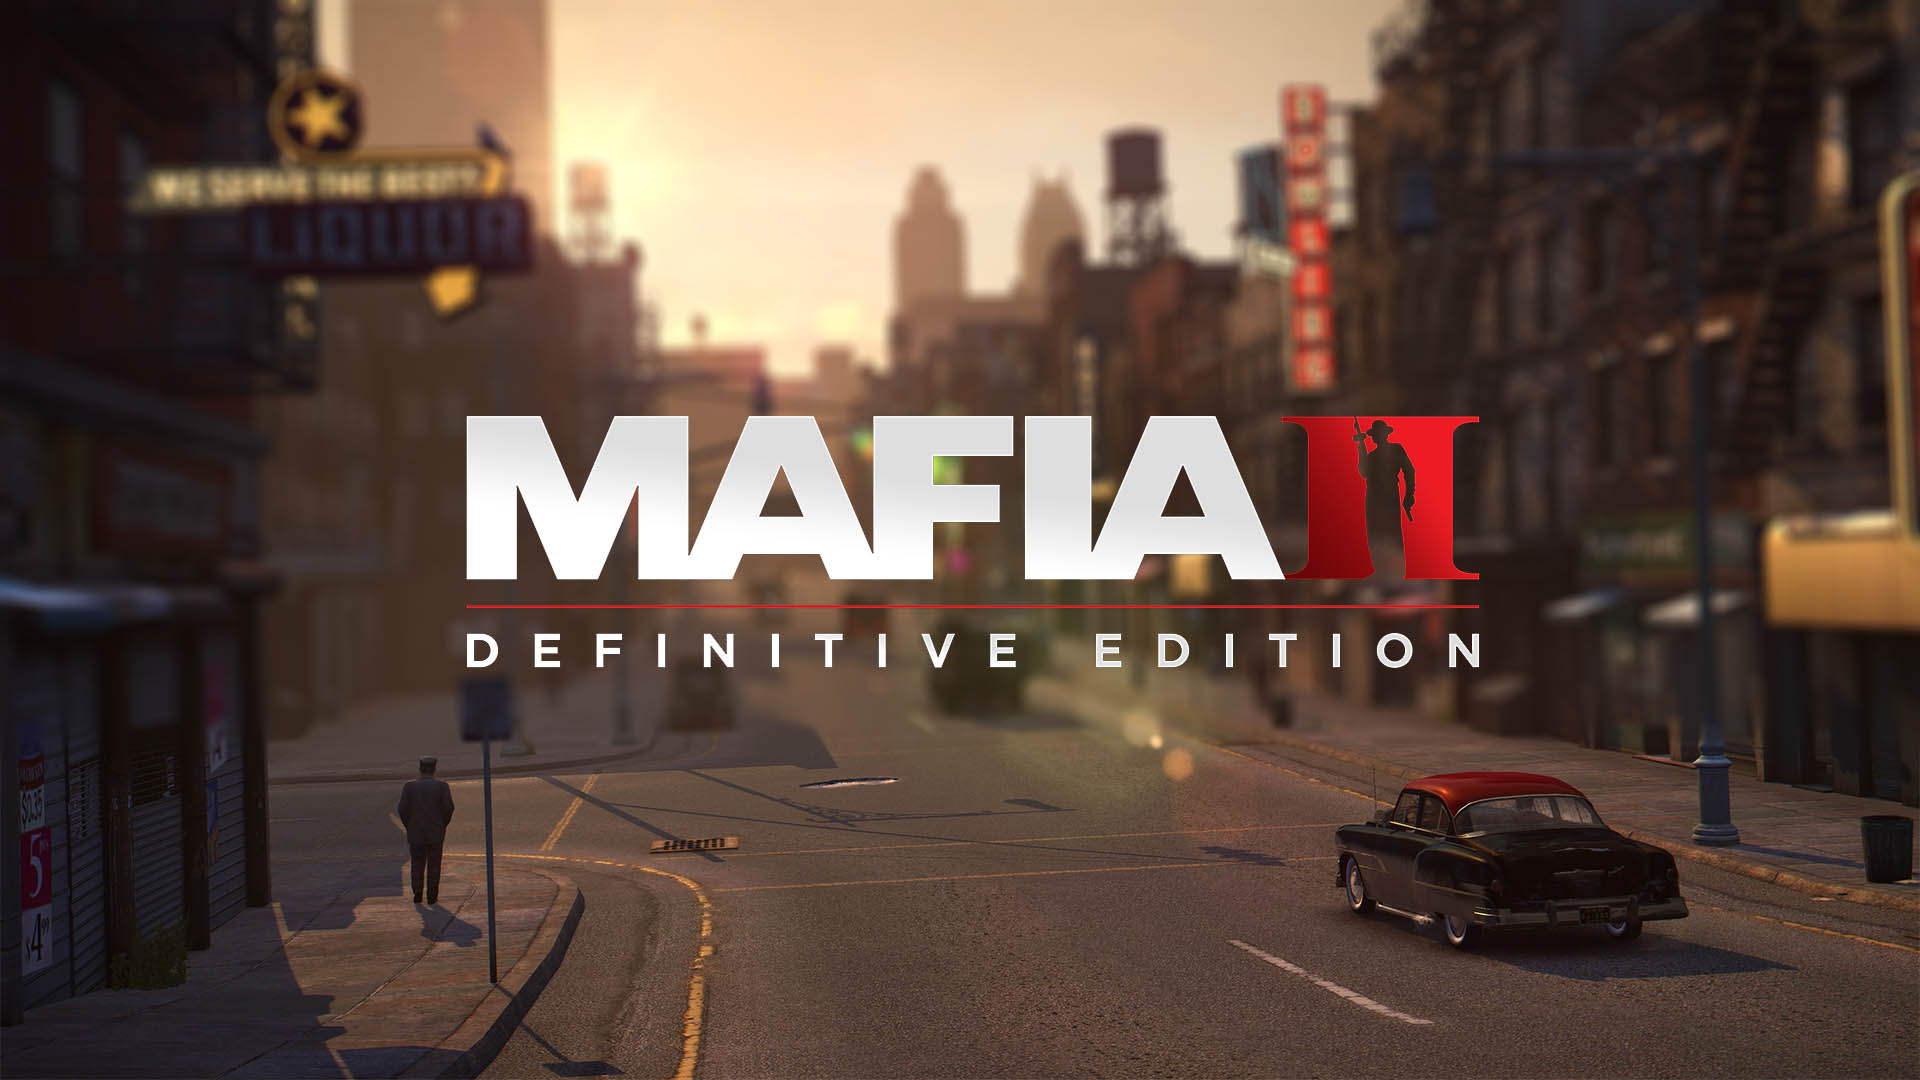 mafia 2 definitive edition ps4 free